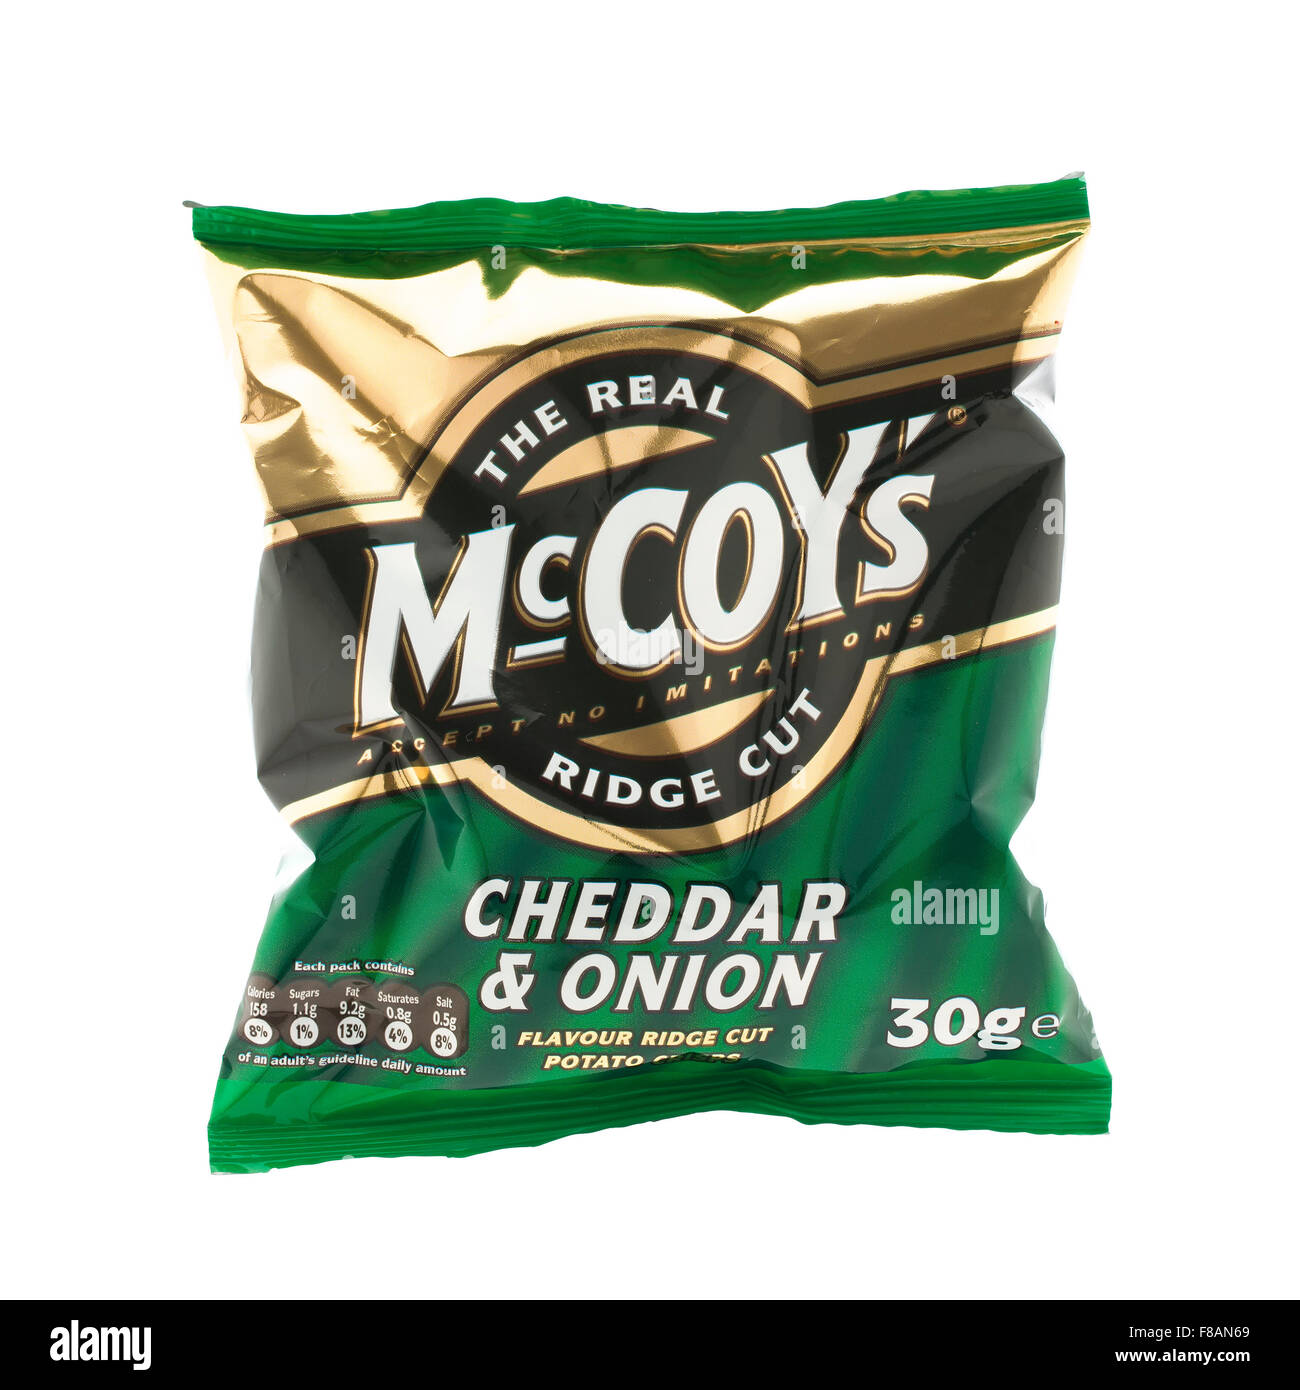 Sachet de fromage et l'Oignon McCoy Ridge Cut chips sur un fond blanc, McCoy's sont faites par KP en-cas au Royaume-Uni Banque D'Images